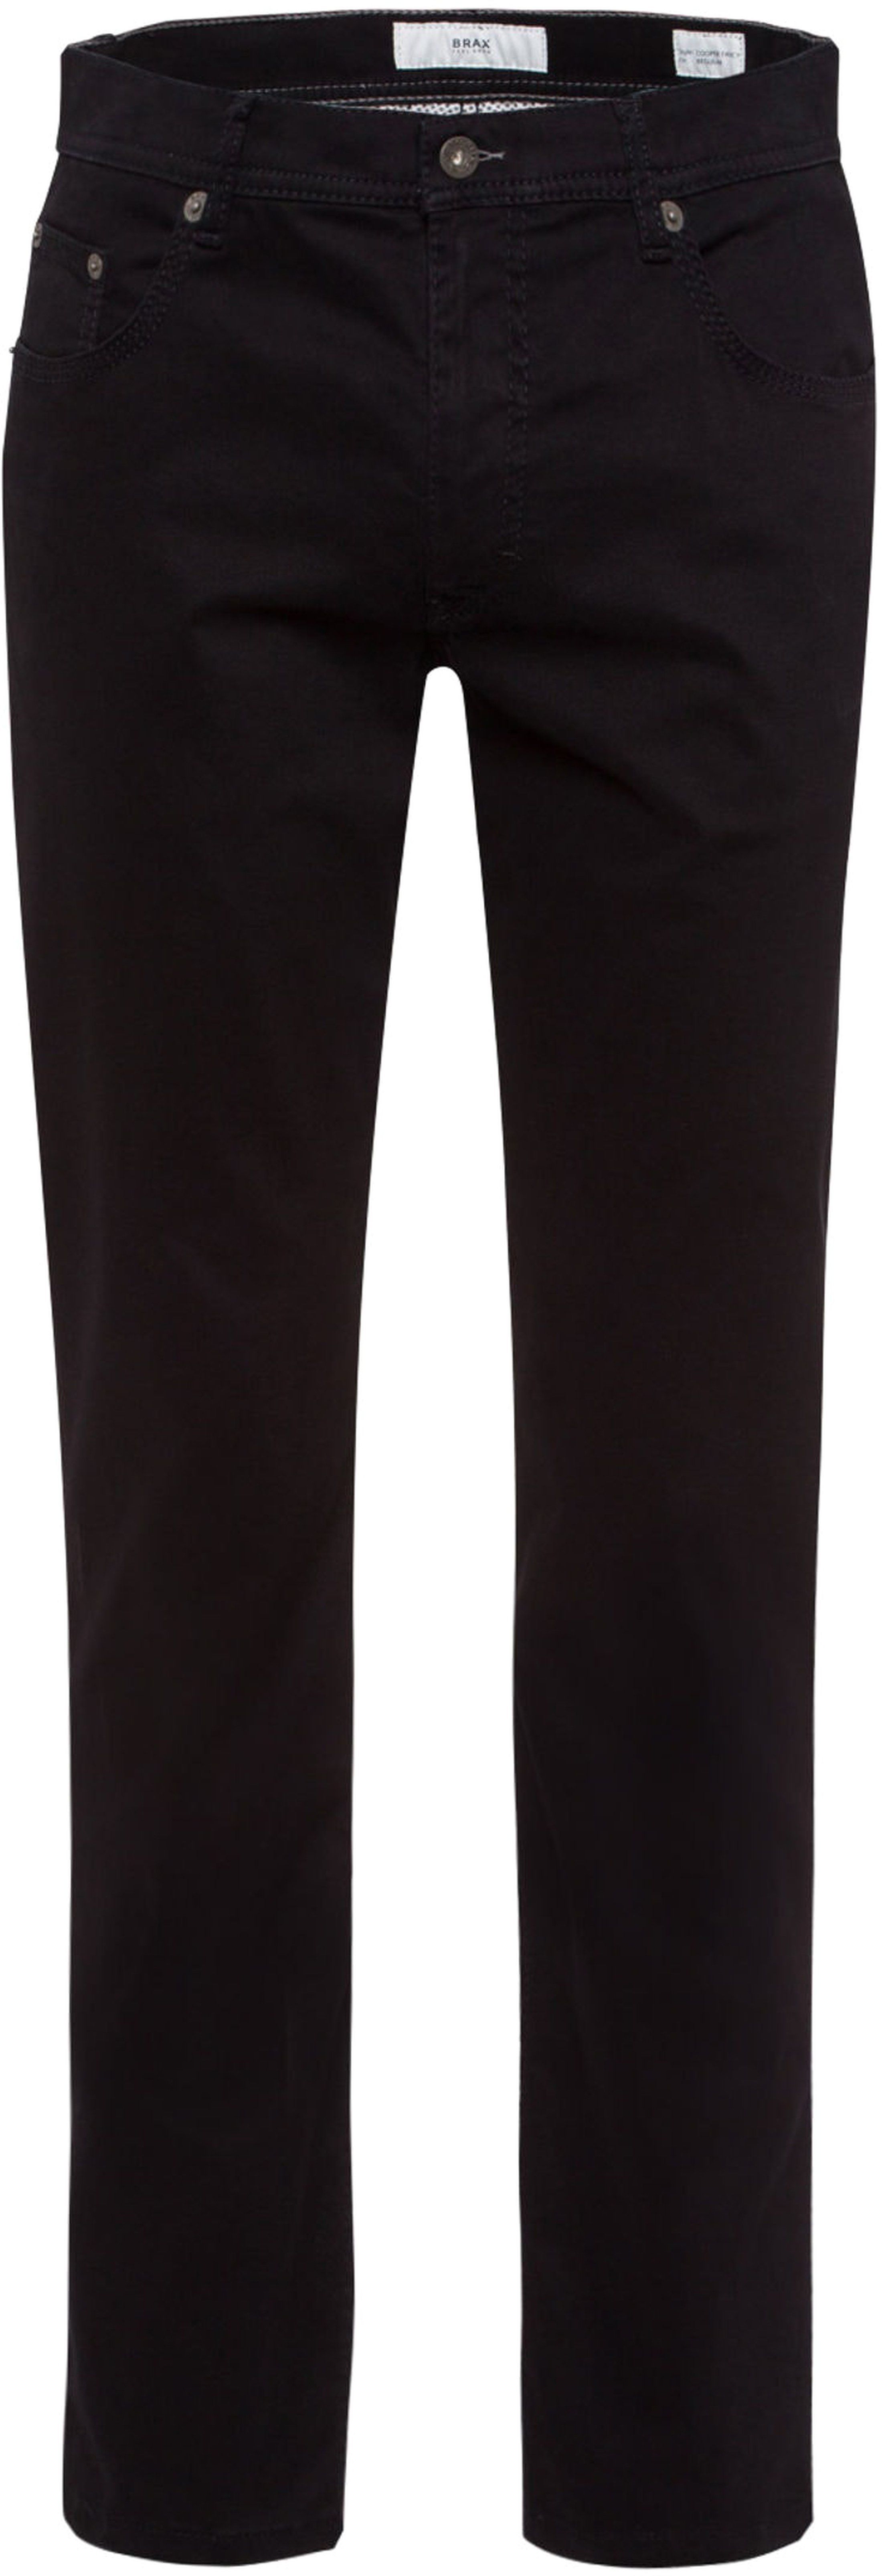 Brax Trousers Cooper Fancy Black size W 52